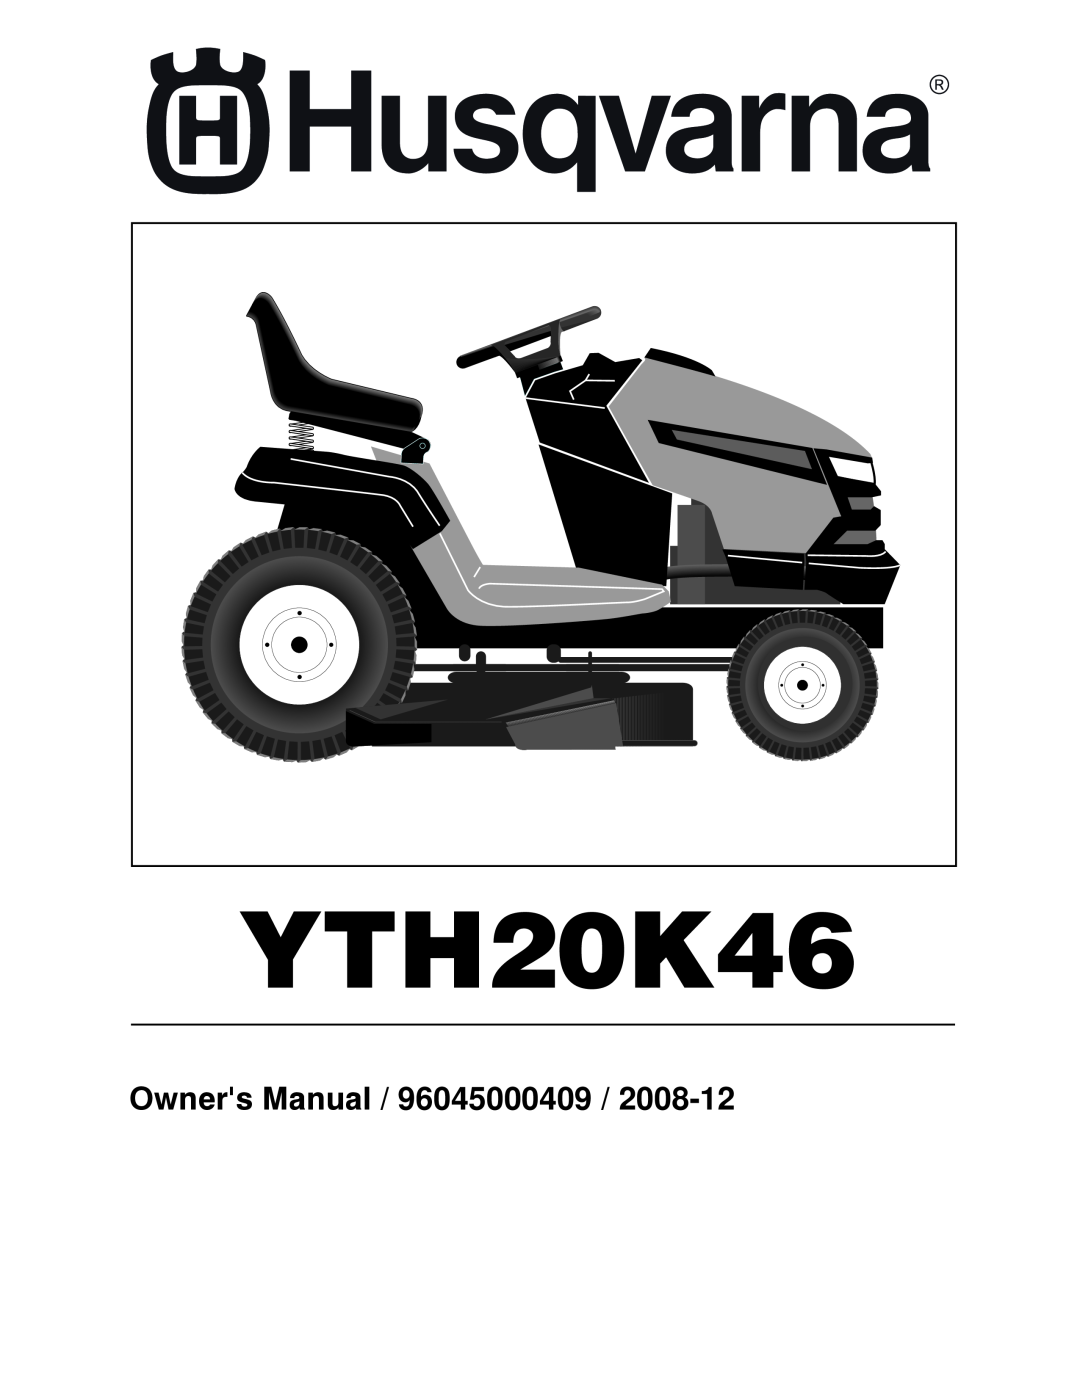 Husqvarna 532 42 32-01 owner manual YTH20K46, Owners Manual / 96045000409 